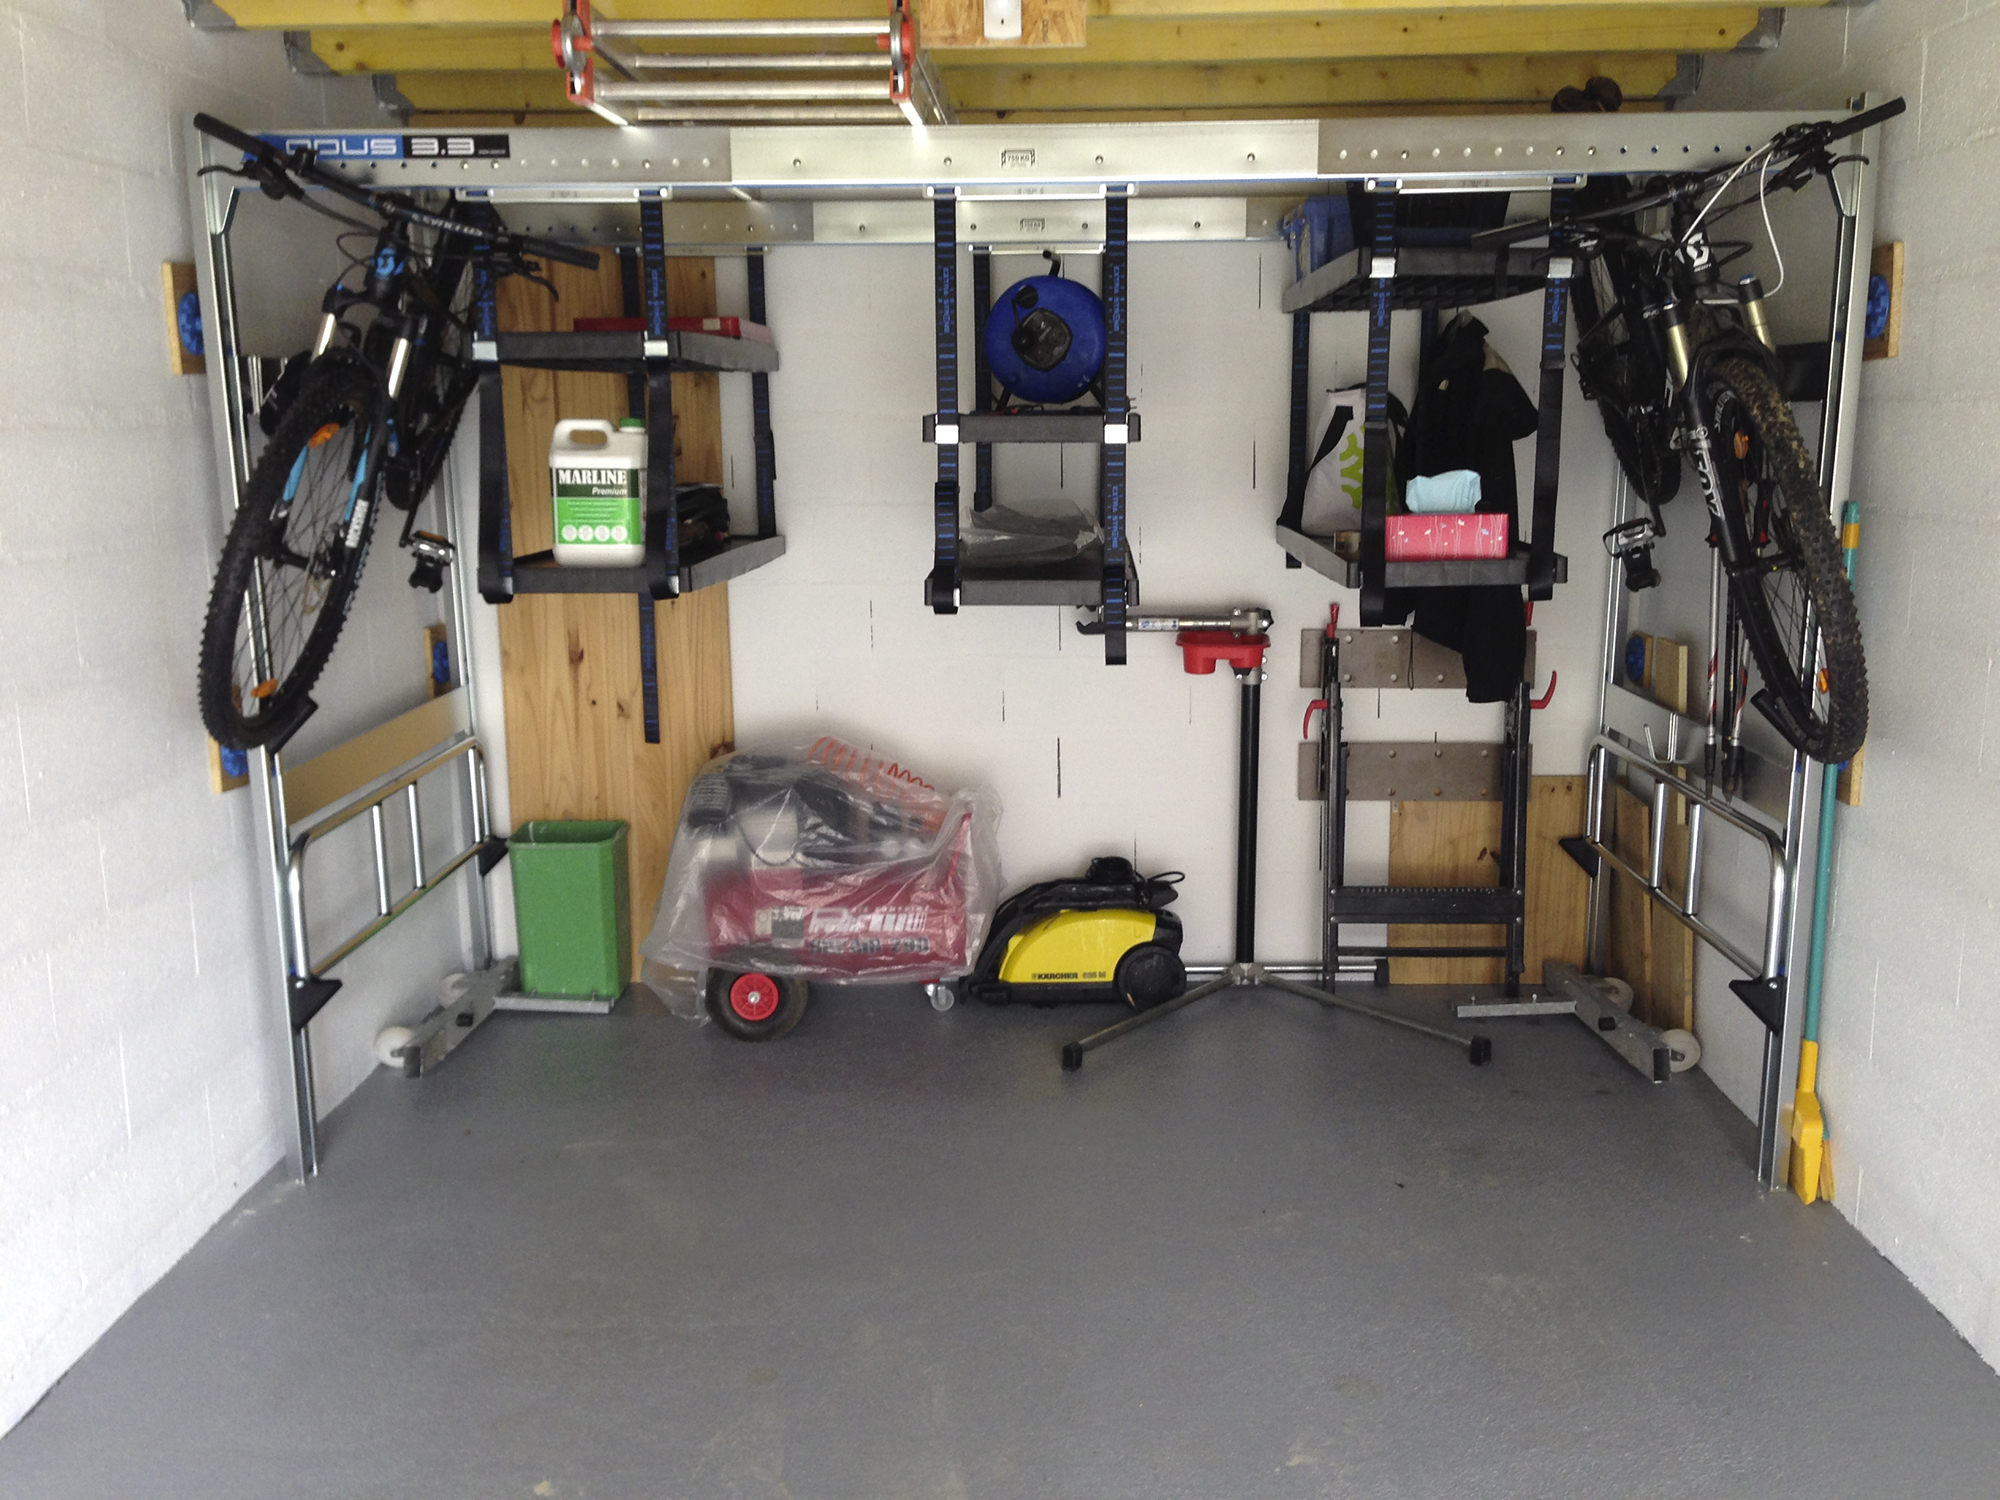 Rangement du garage : comment aménager l'espace ?